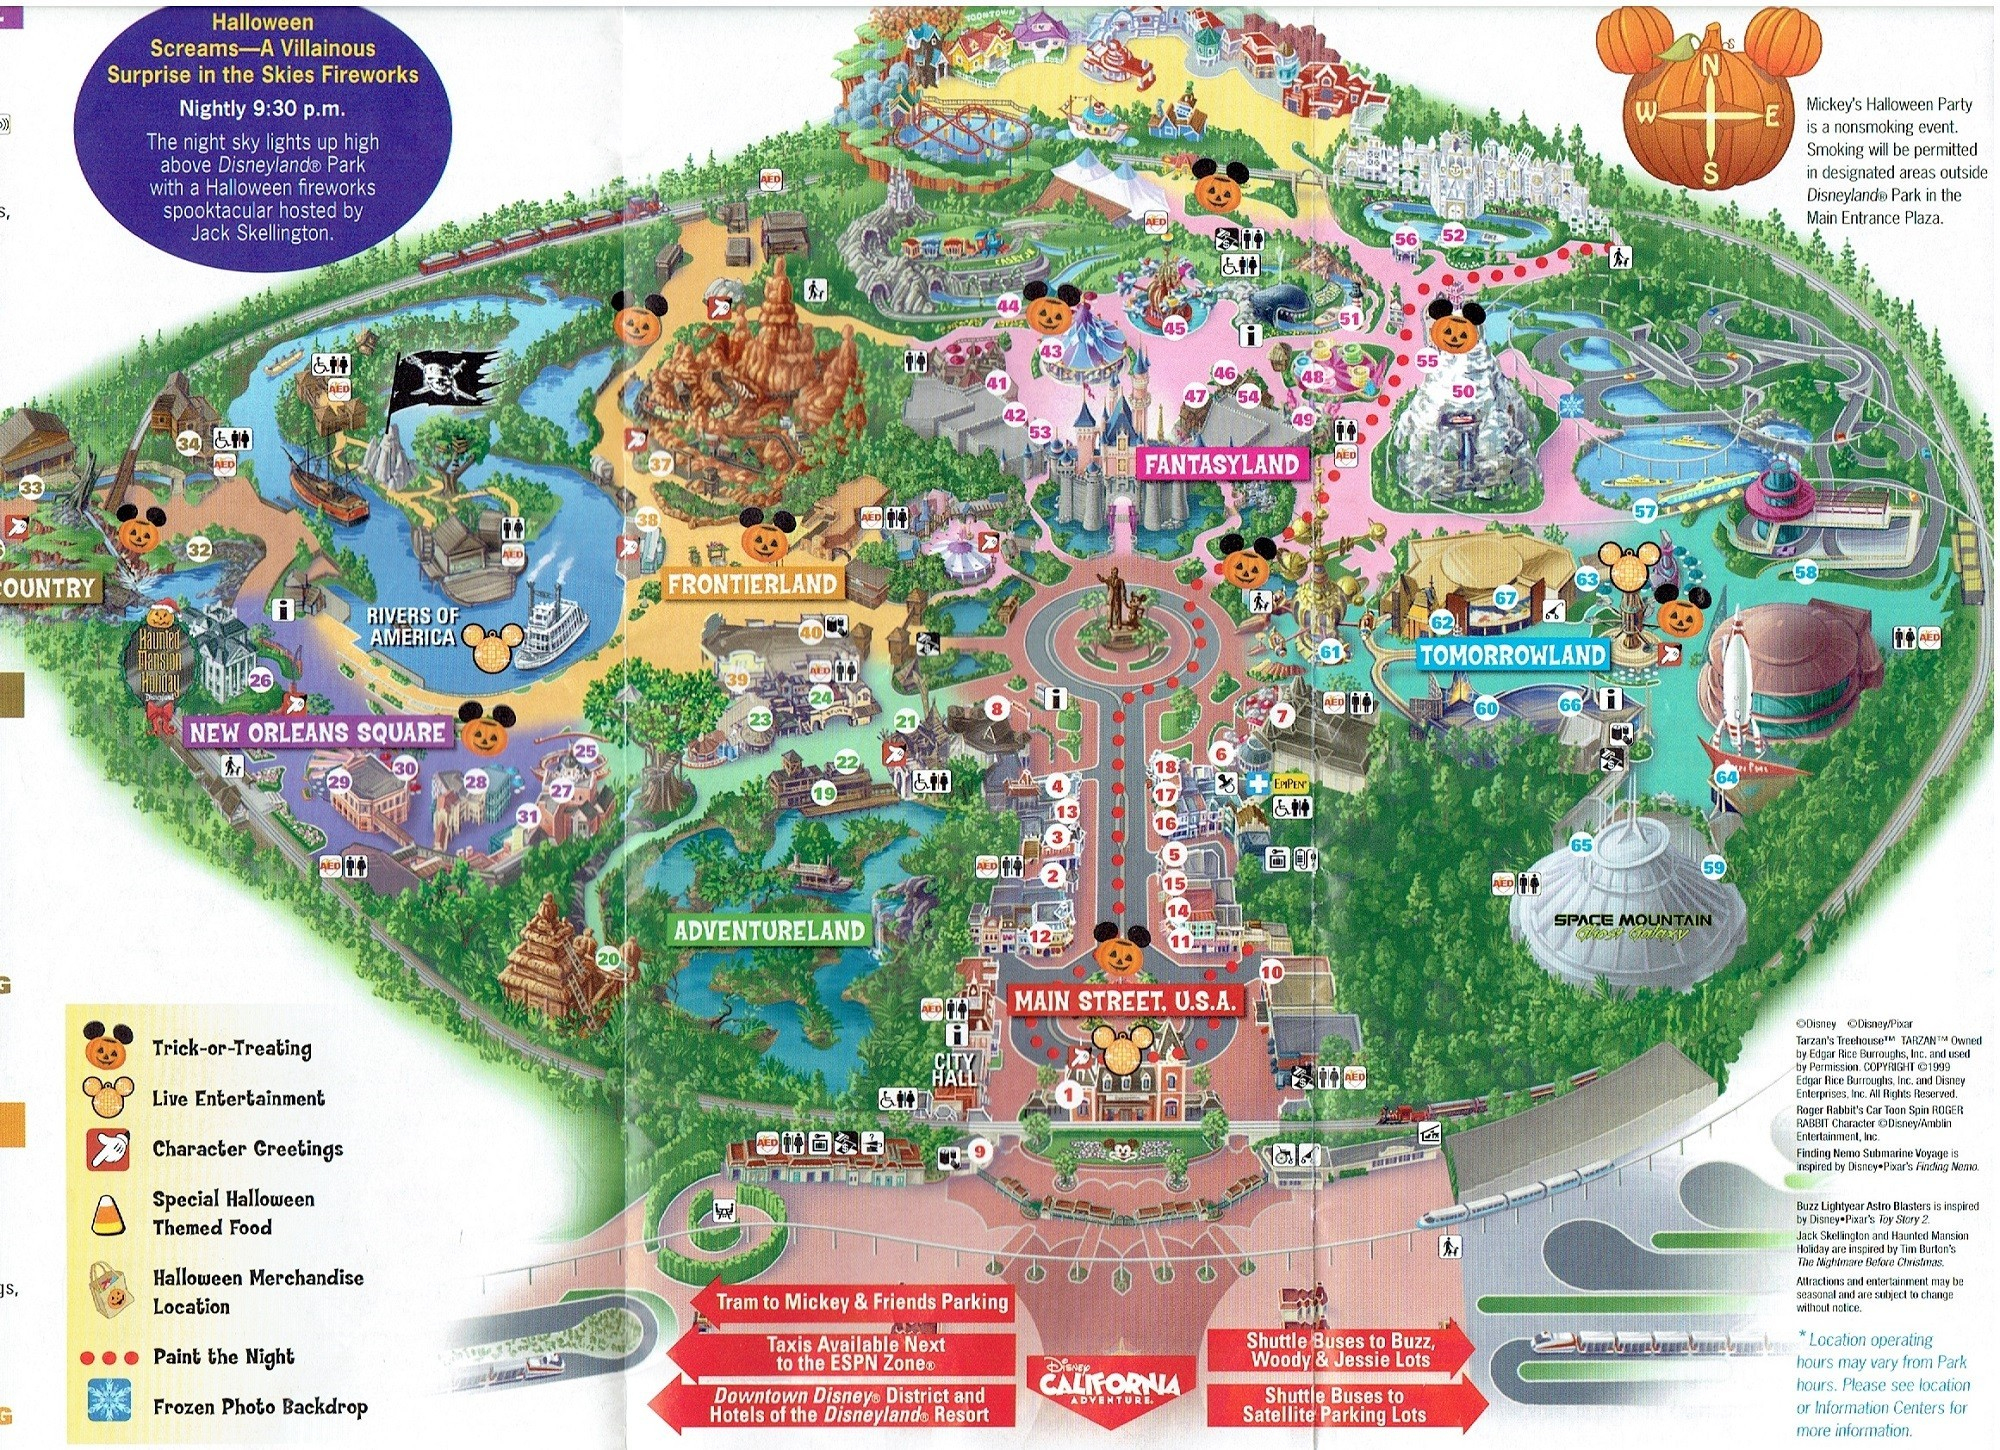 Disney World Florida Map - Mobilacomanda - Map Of Florida Showing Disney World